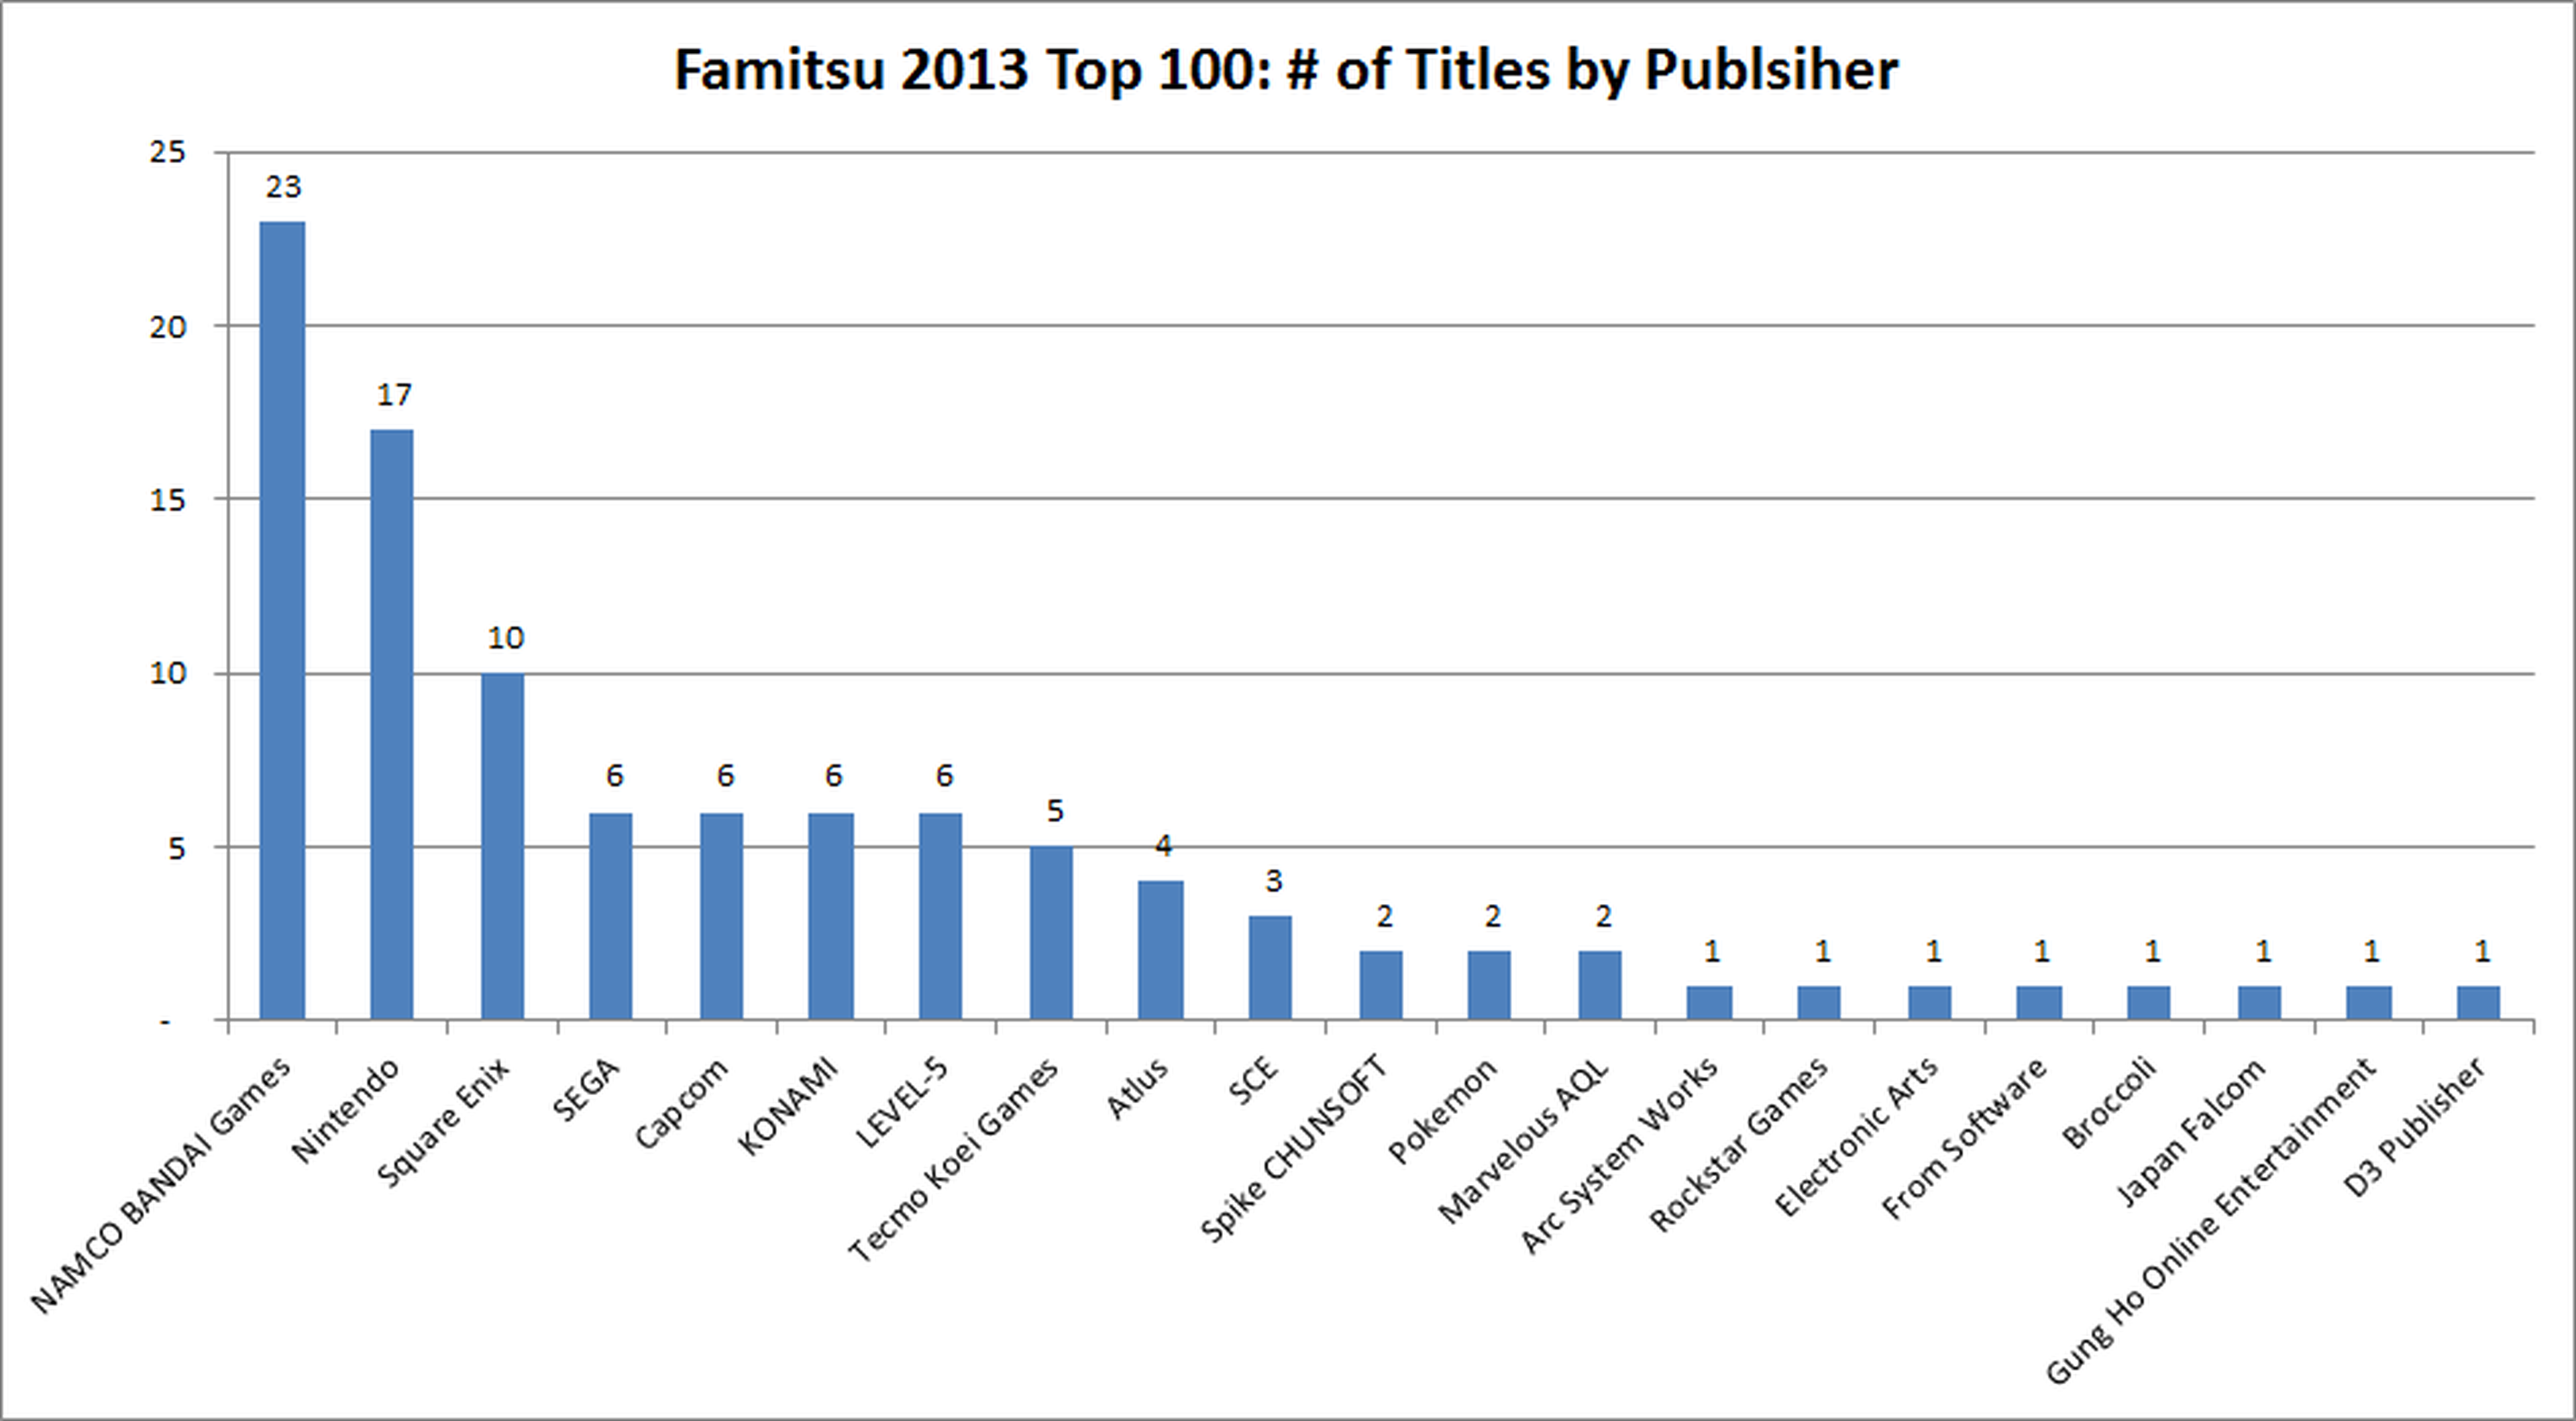 Los 100 juegos más vendidos en Japón en 2013